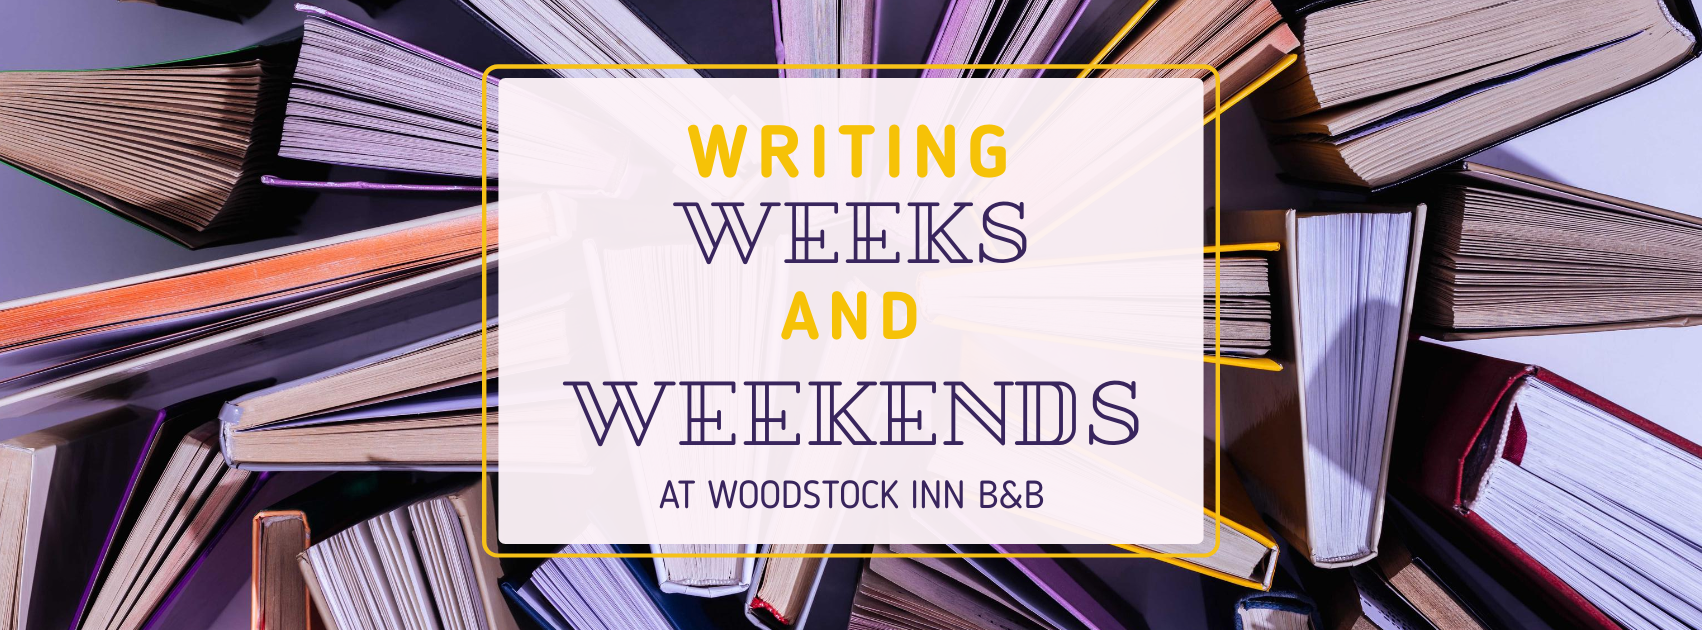 WI-writing-weeks-weekends-banner